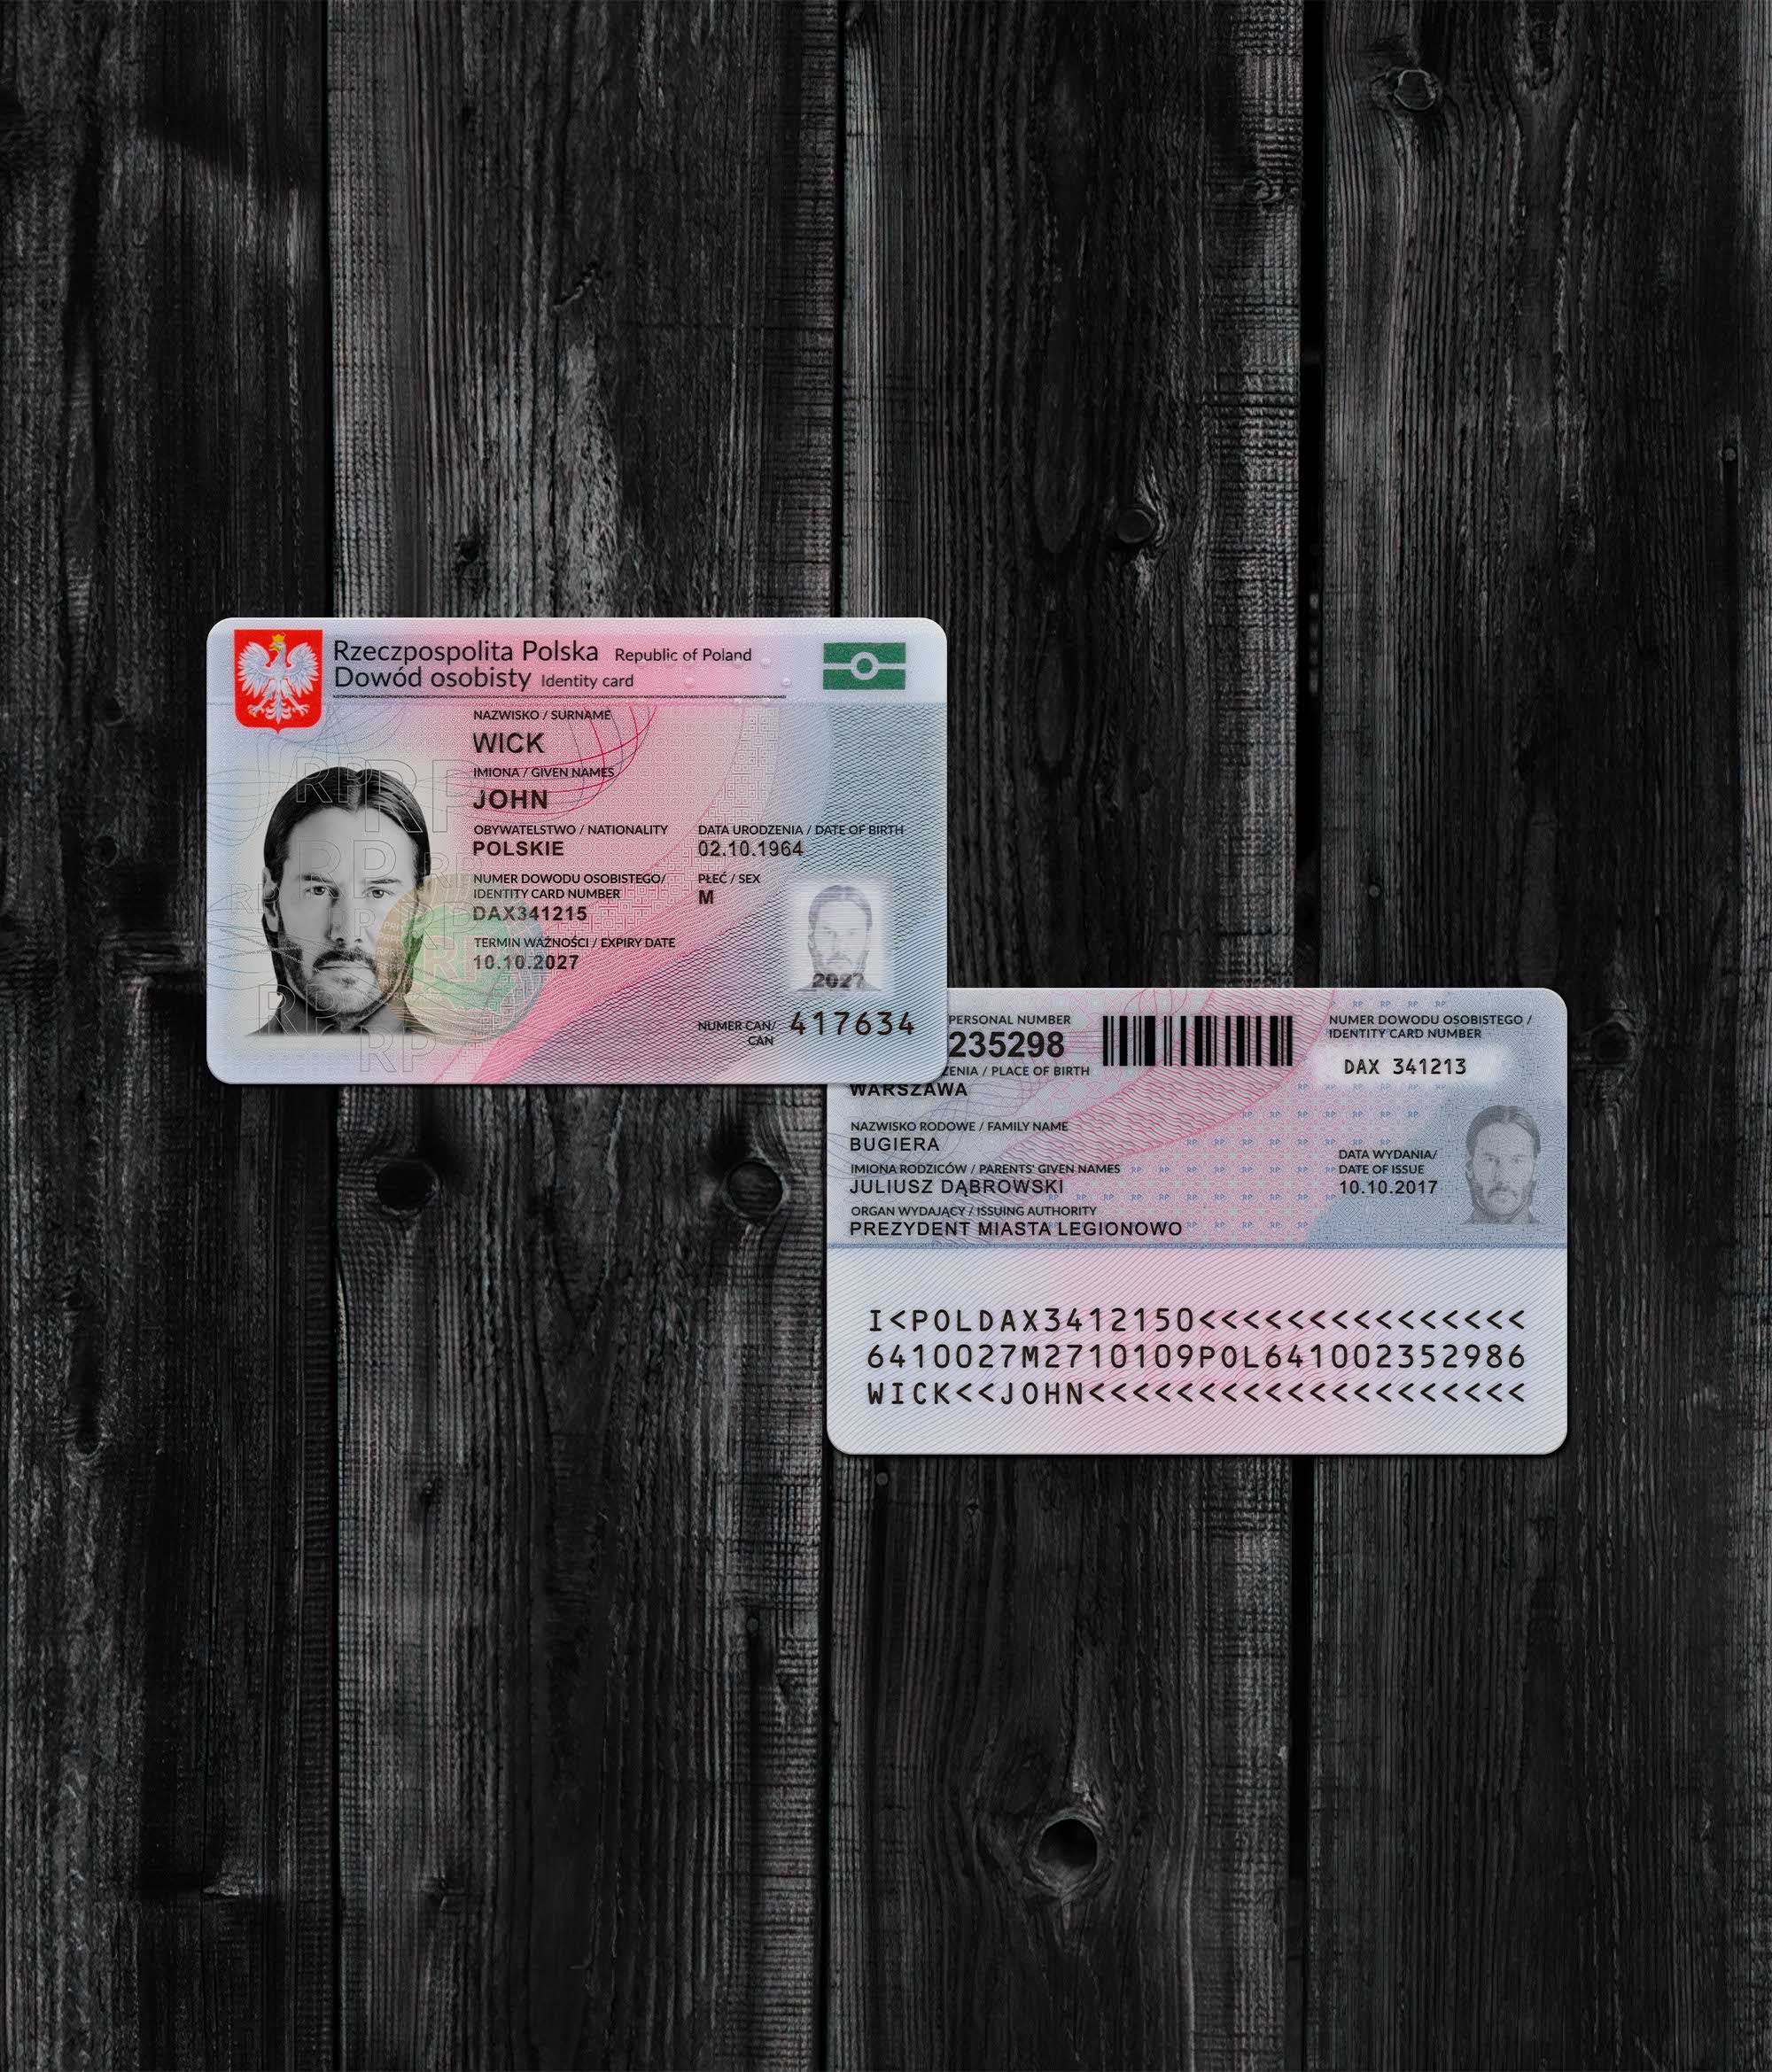 Poland ID Card 2019+2